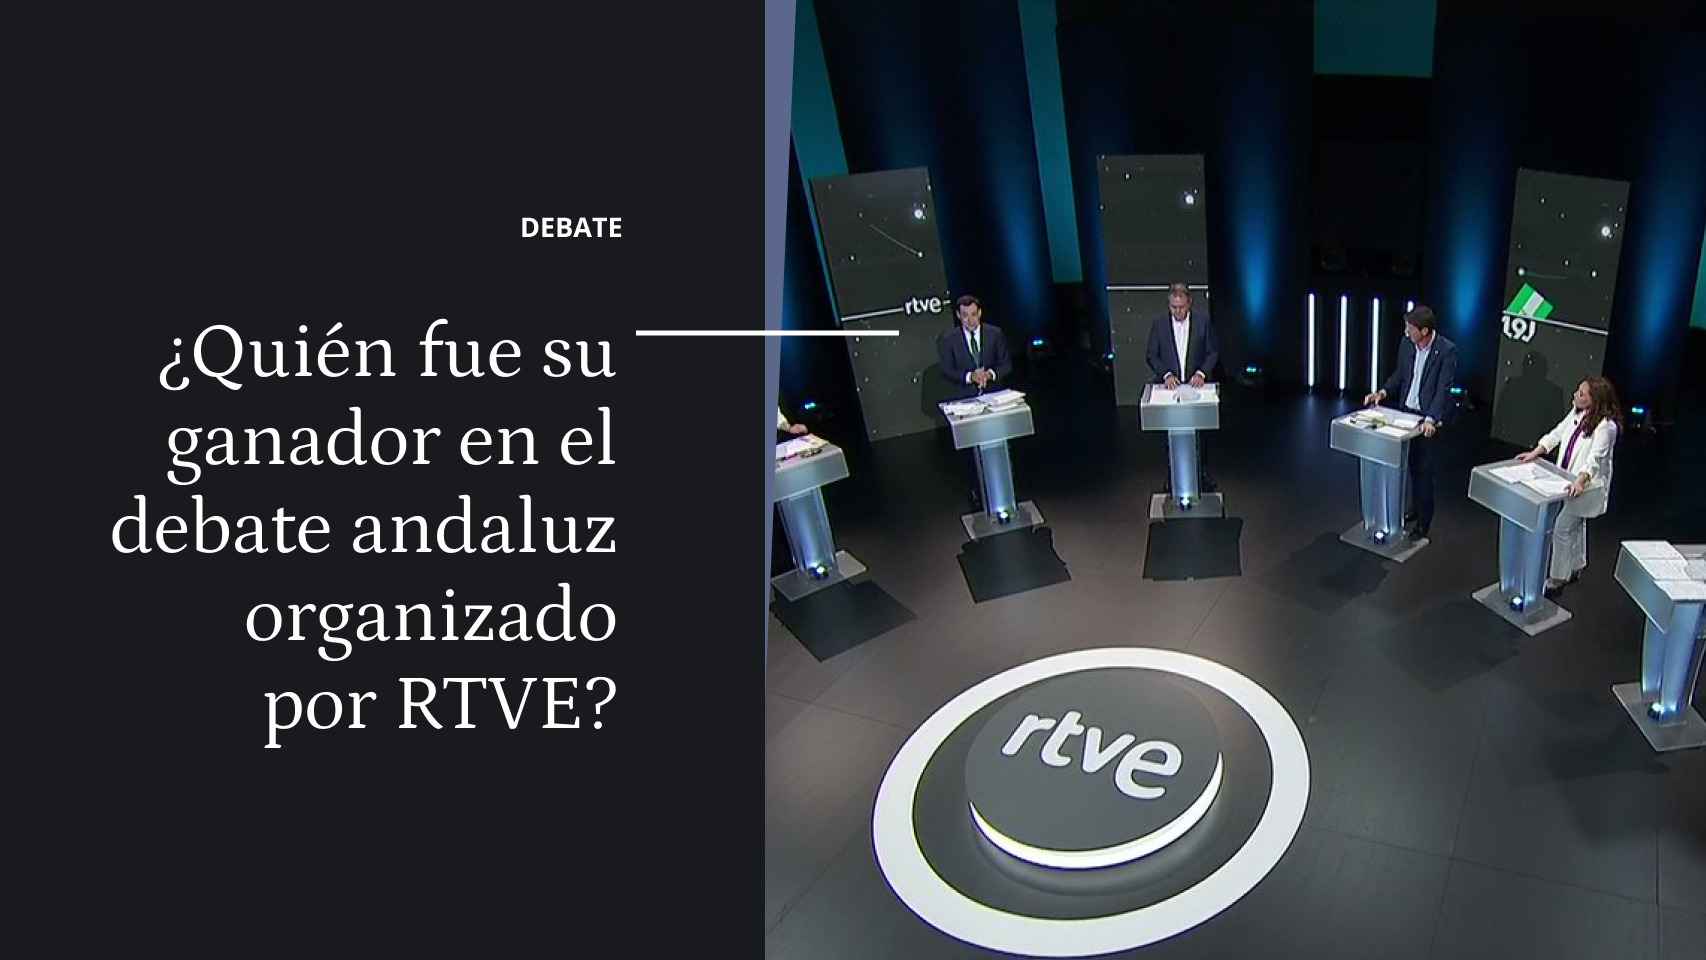 Debate | ¿Quién fue su ganador en el debate andaluz organizado por RTVE? thumbnail